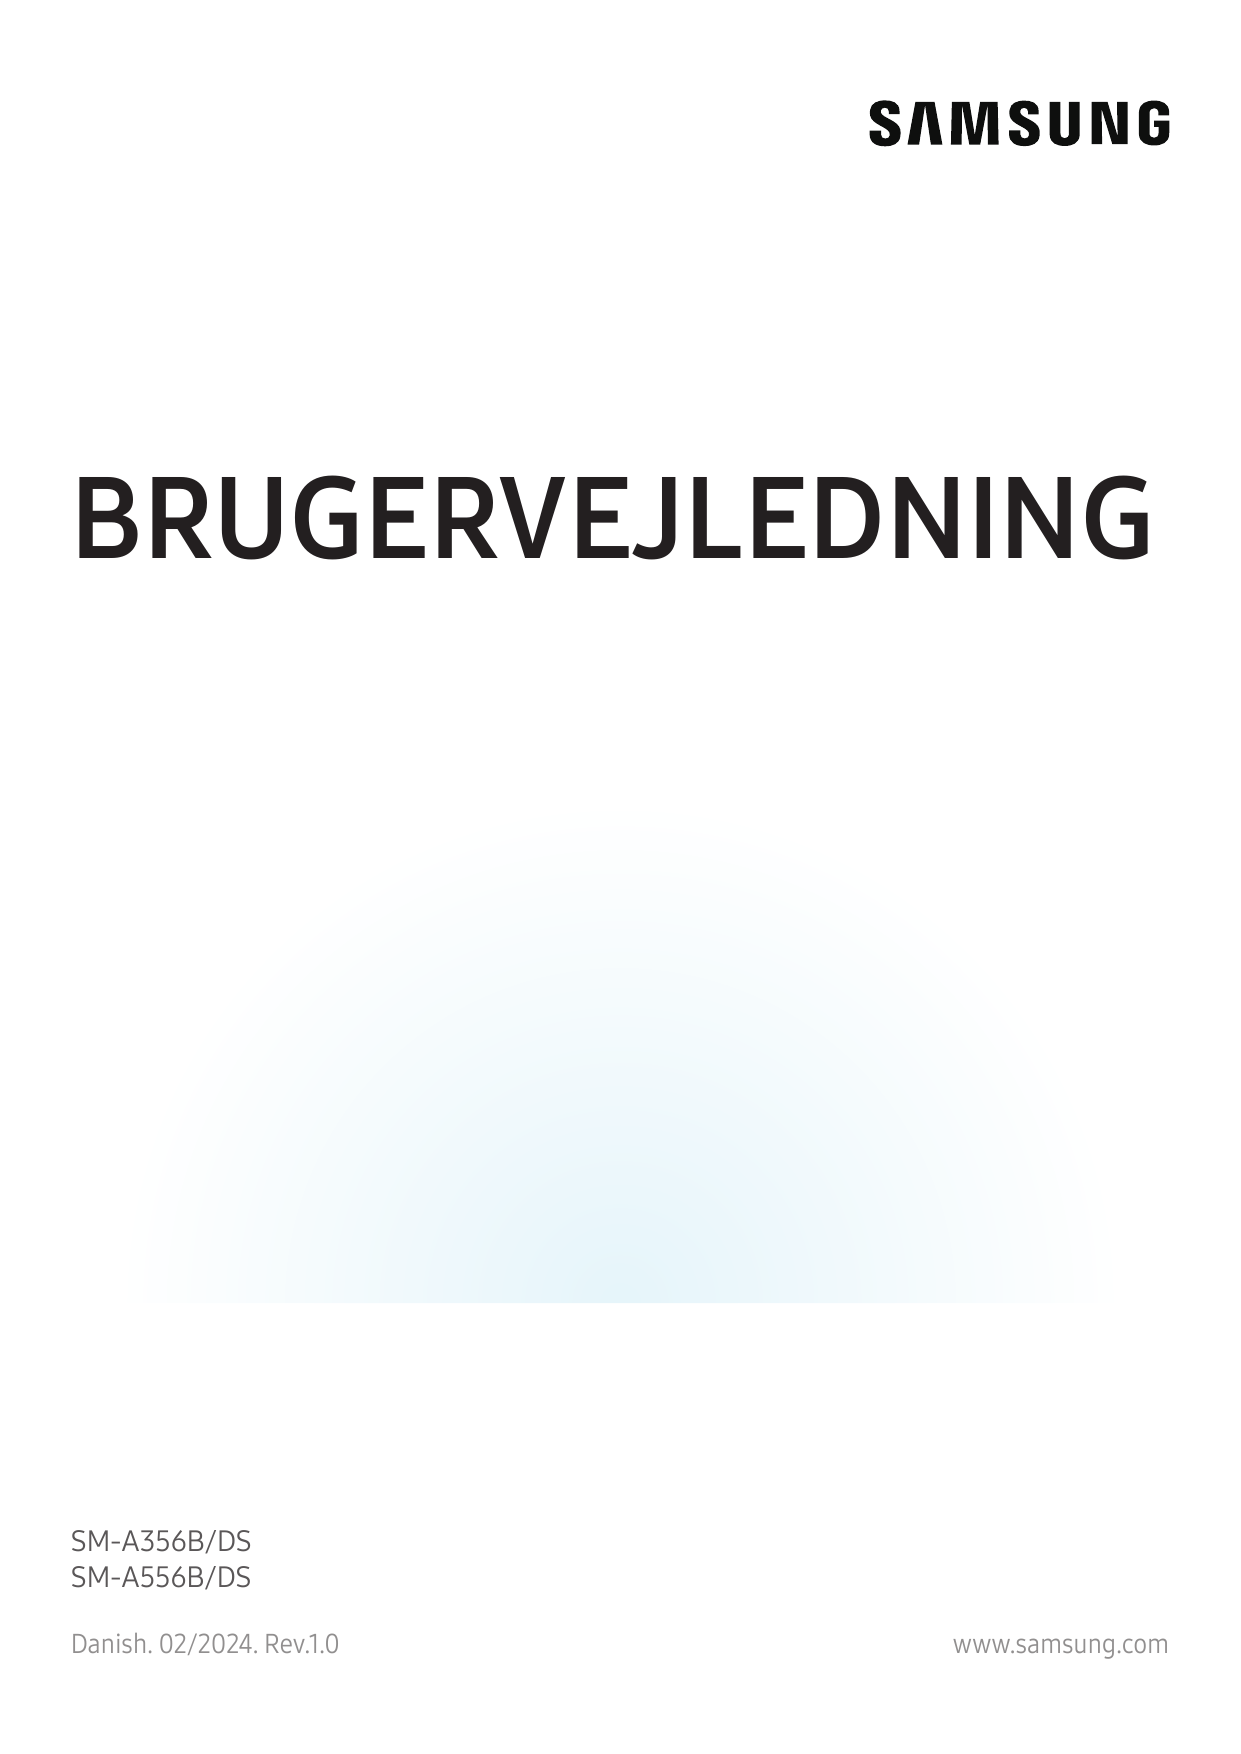 BRUGERVEJLEDNINGSM-A356B/DSSM-A556B/DSDanish. 02/2024. Rev.1.0www.samsung.com